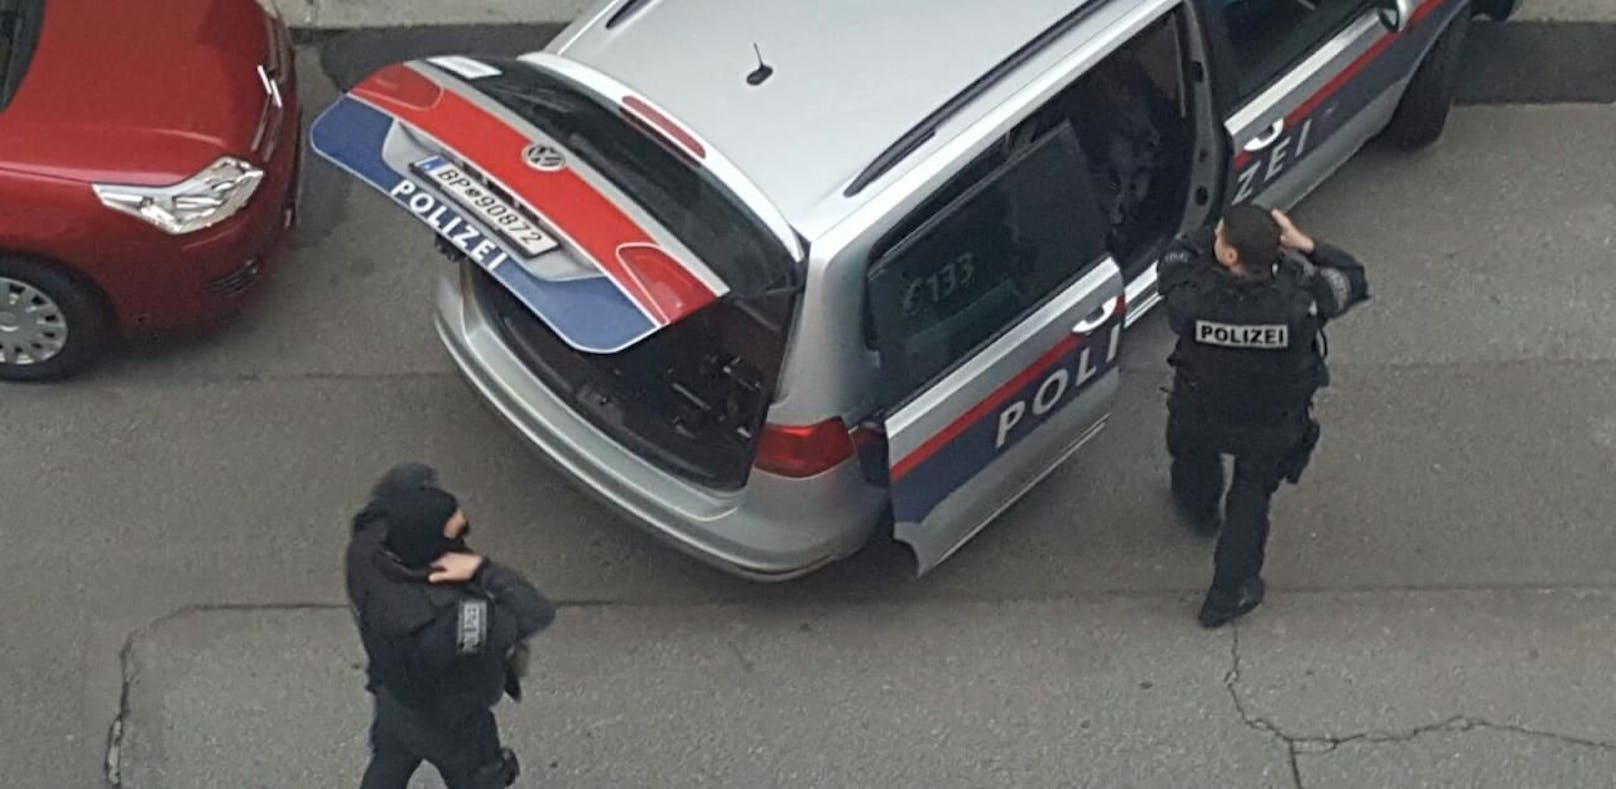 Die Polizei musste einiges einstecken bei einem Einsatz in Wien-Alsergrund.